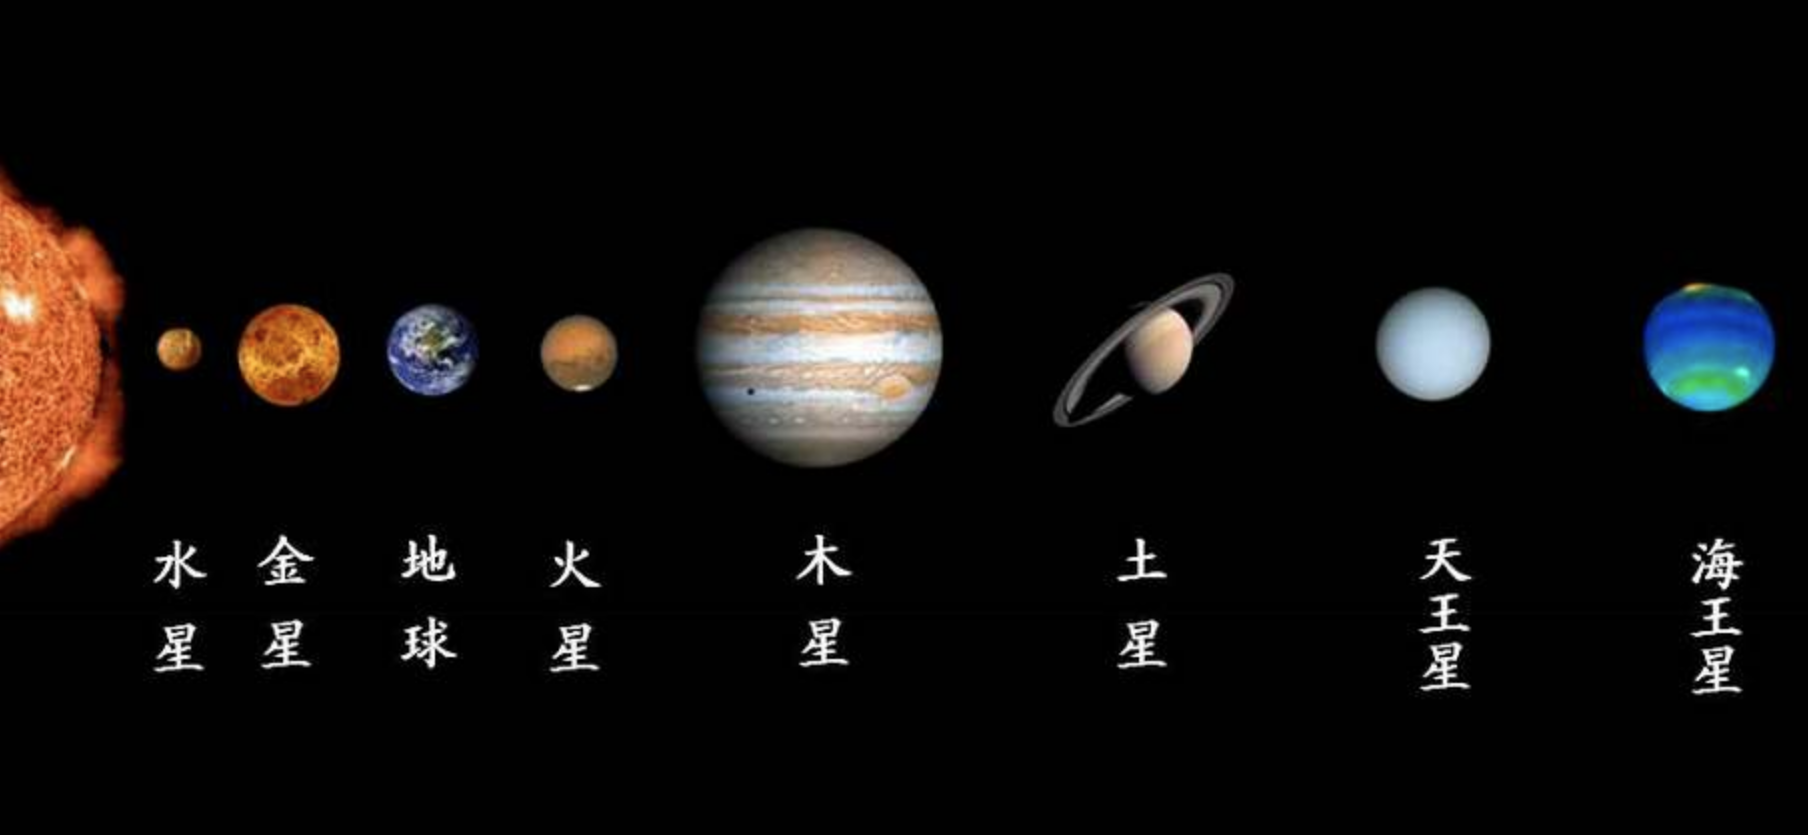 八大行星排列顺序